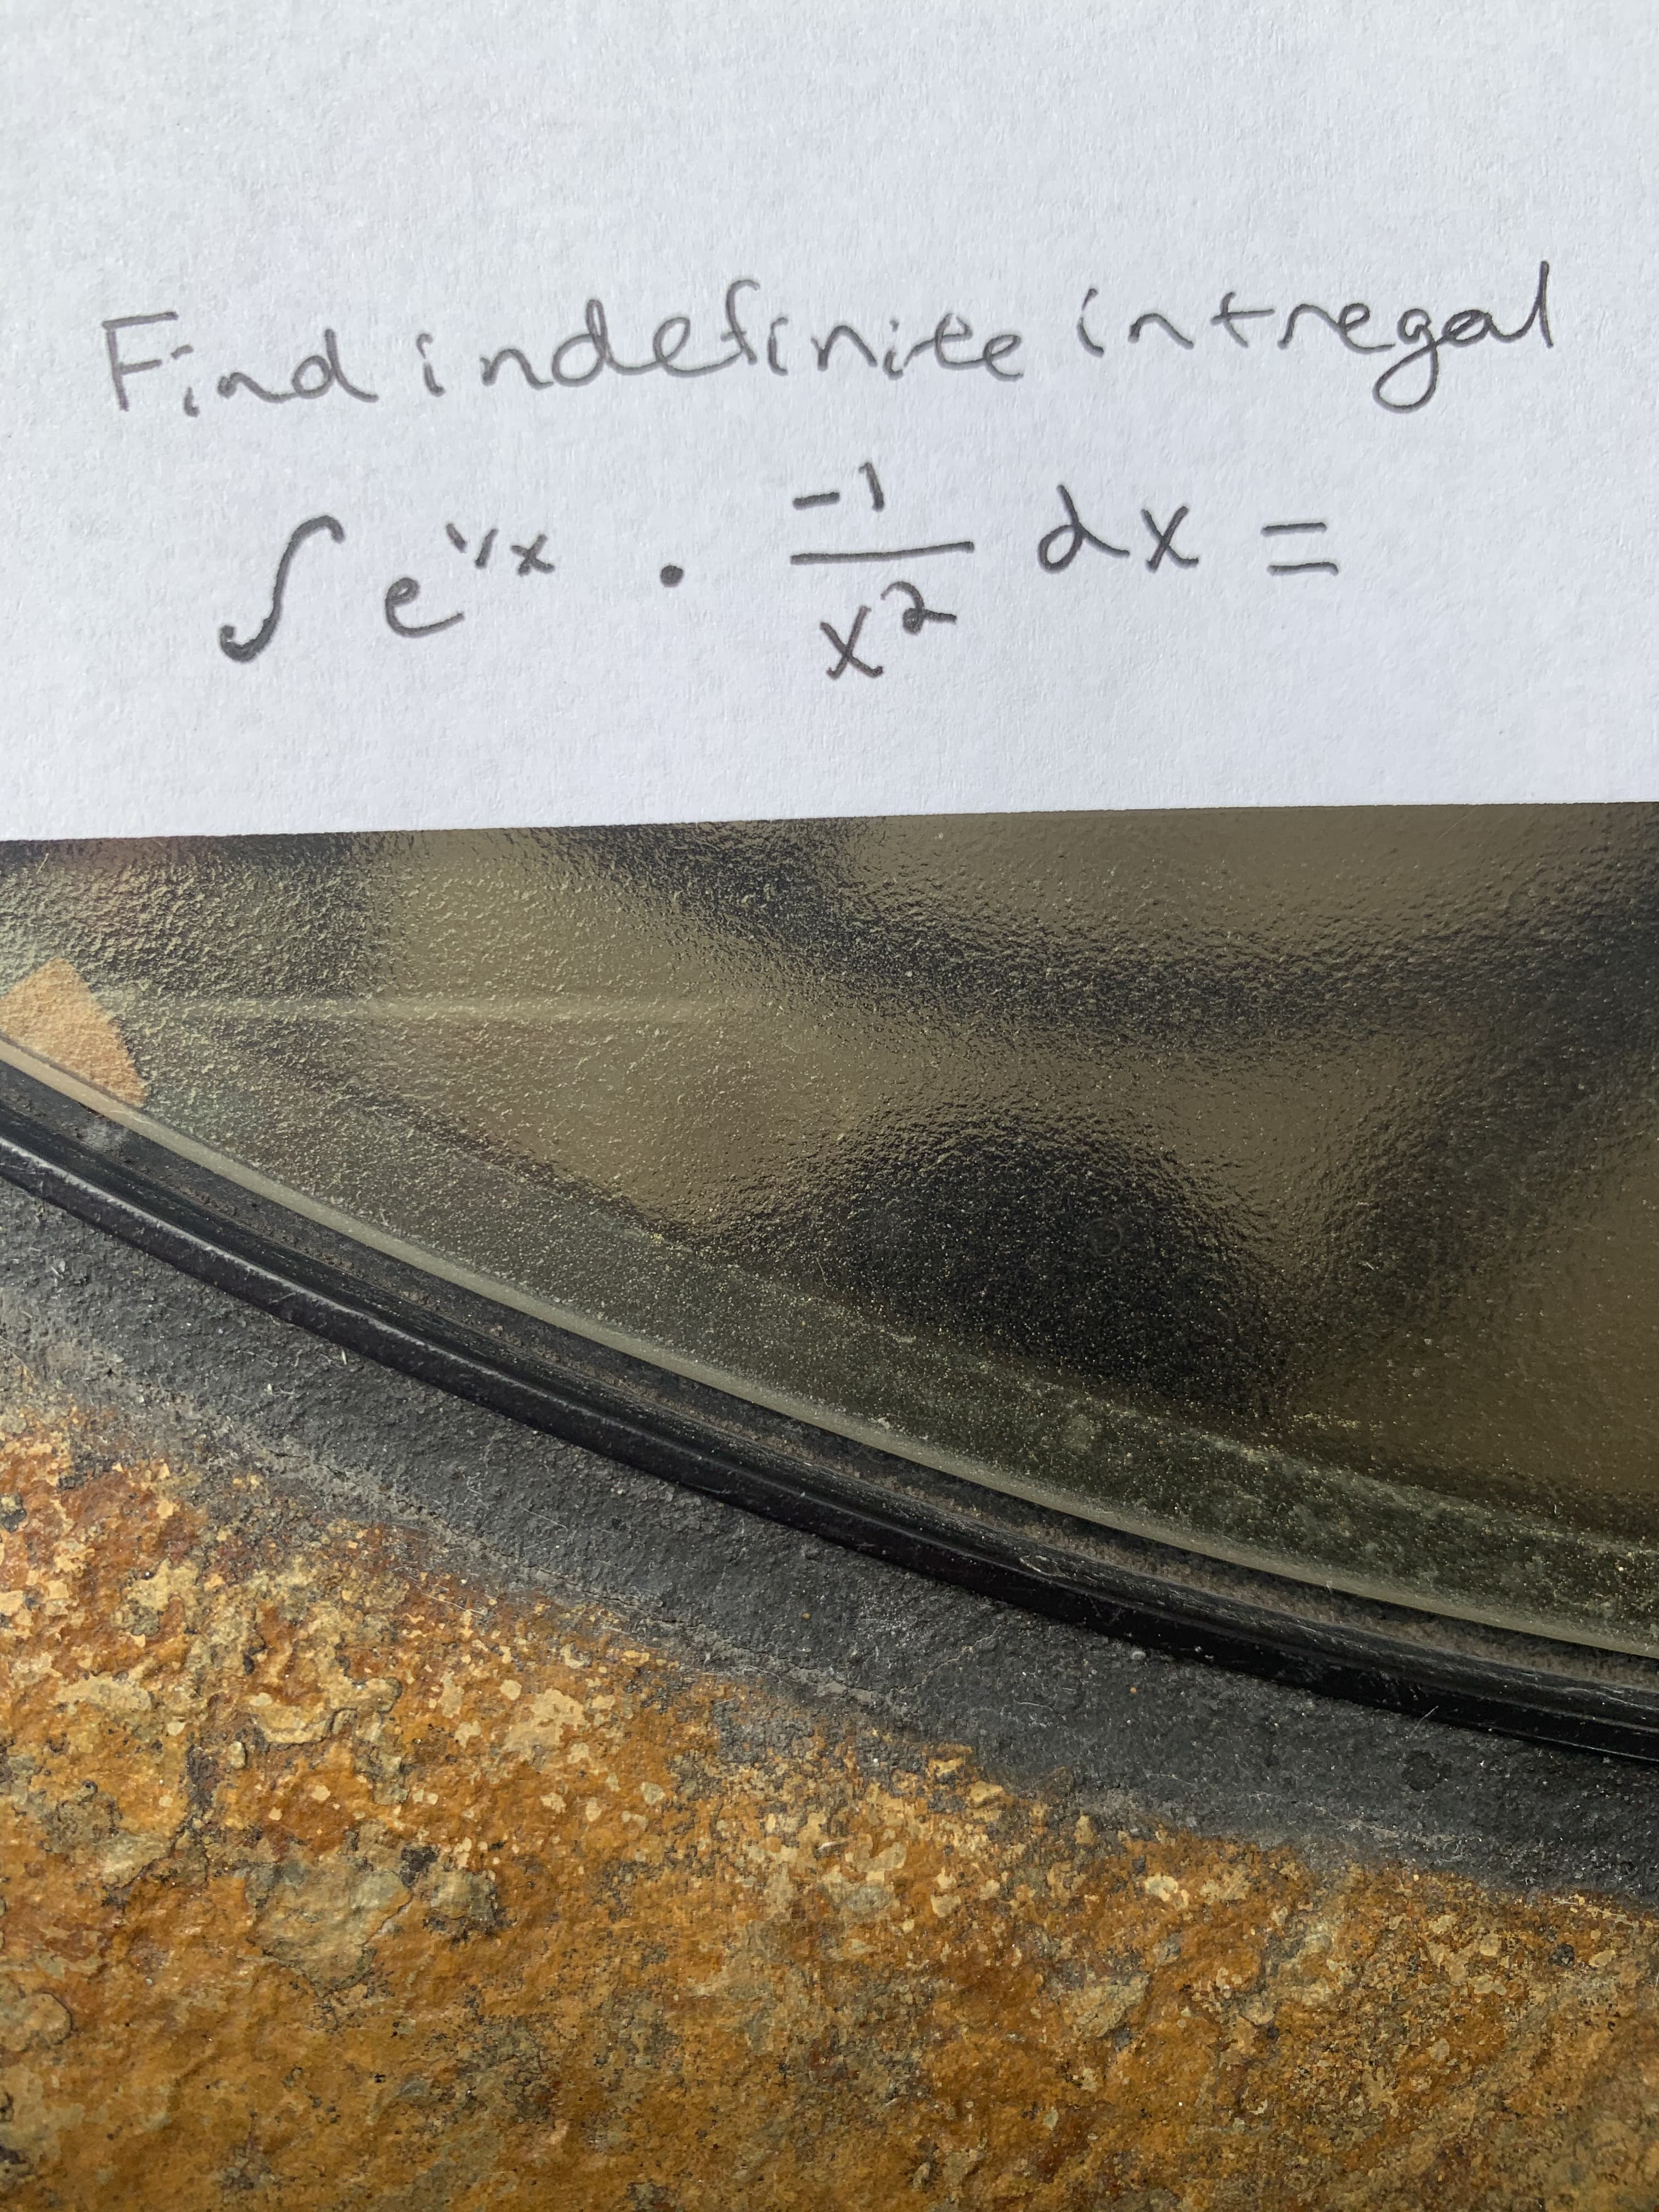 Find intregal
indefinite
dx =
